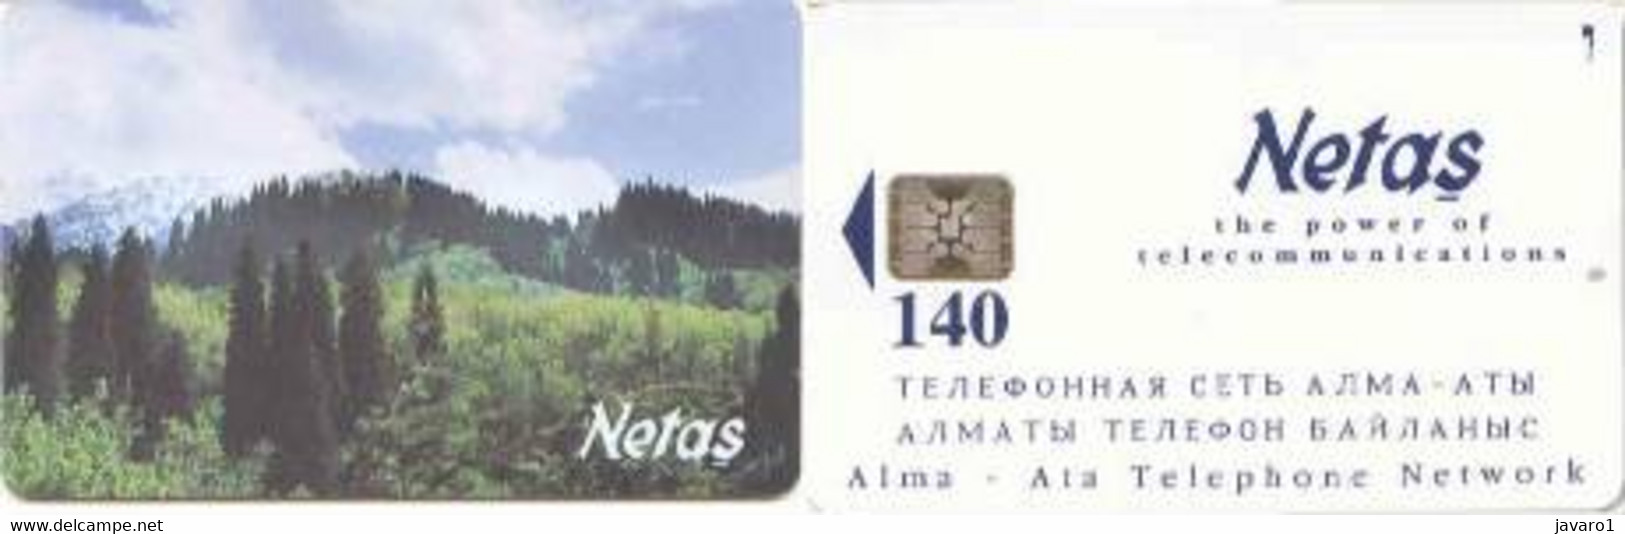 KAZACHSTAN : KAZ-CN1 140u NETAS ALMA-ATA Network MINT - Kazakhstan